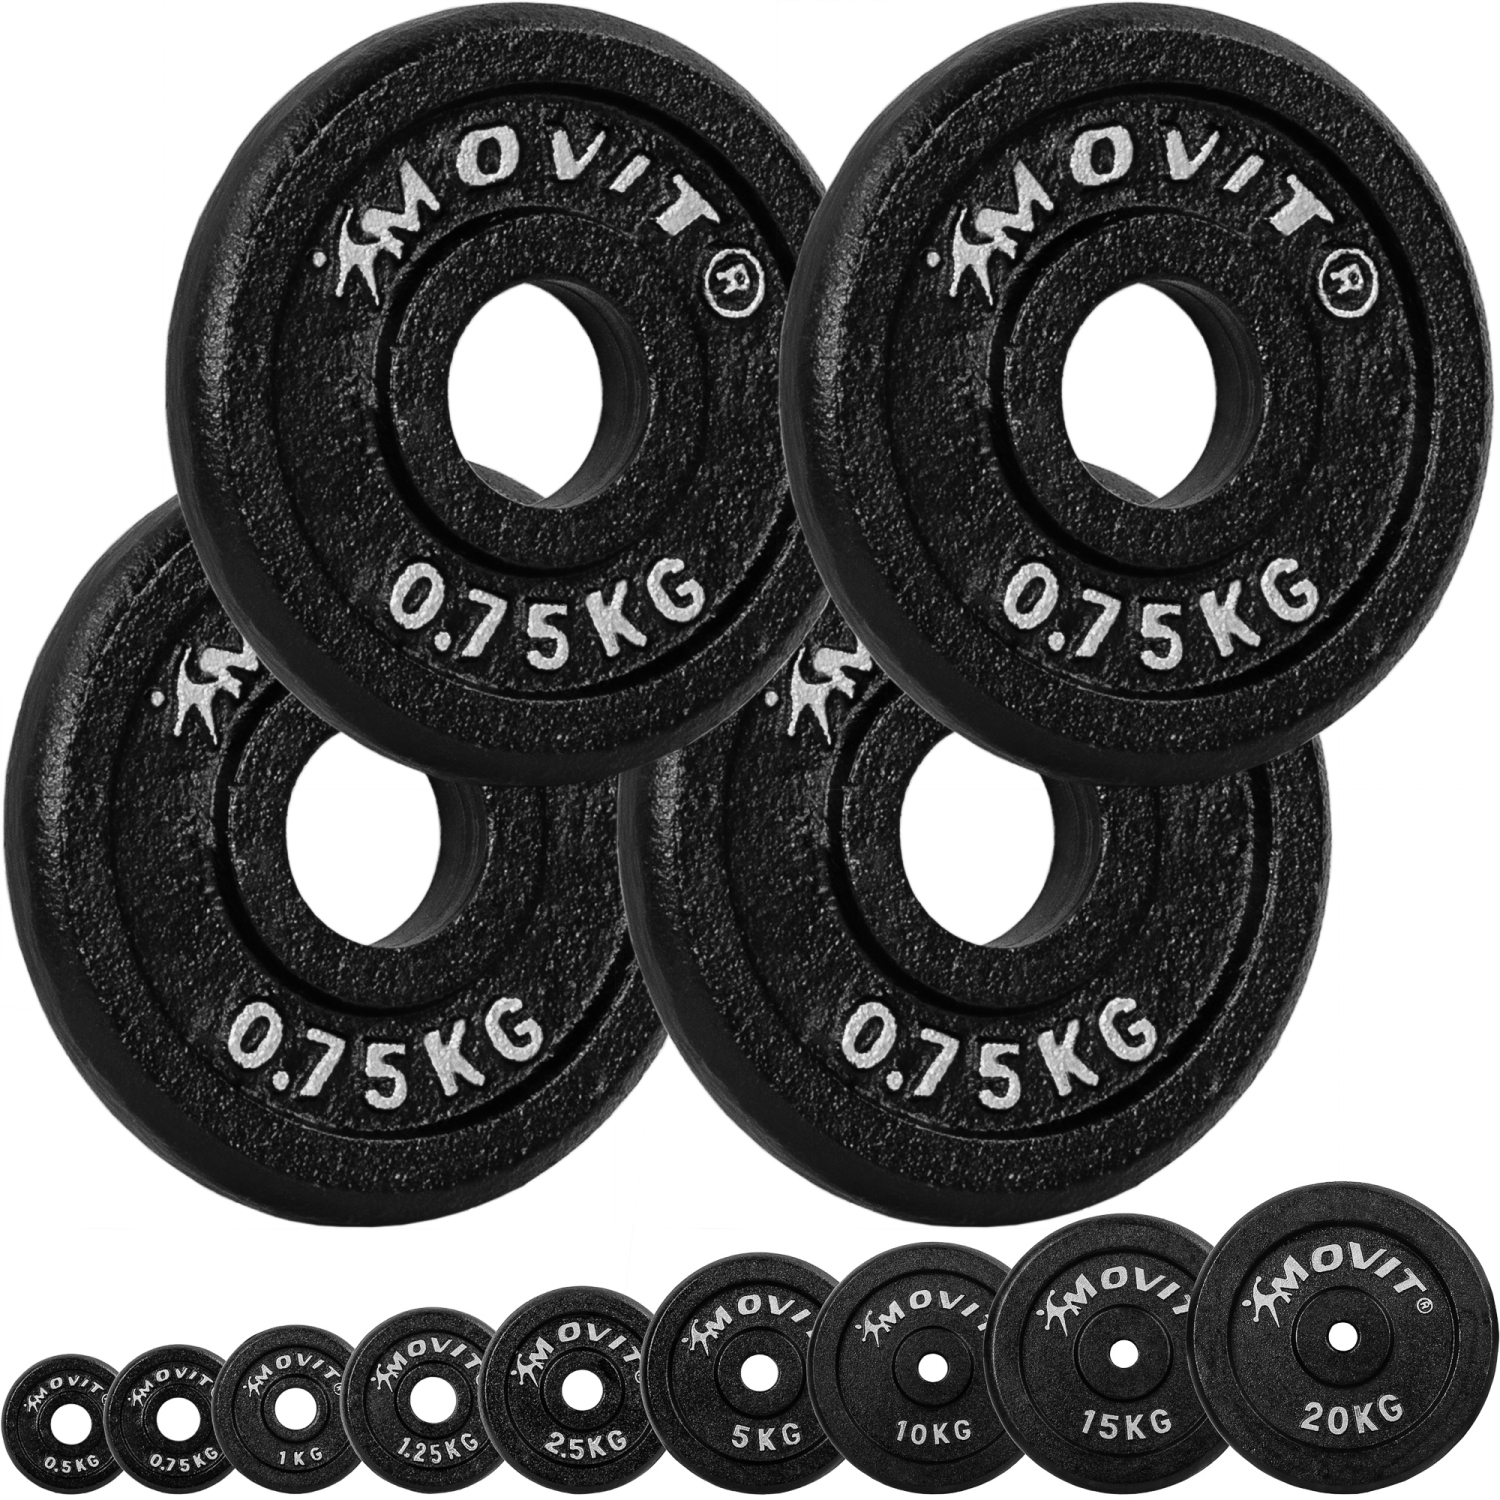 Gewichten set – Voor fitness – Schijven – 30/31 mm – 4x 0.75 kg – Zwart